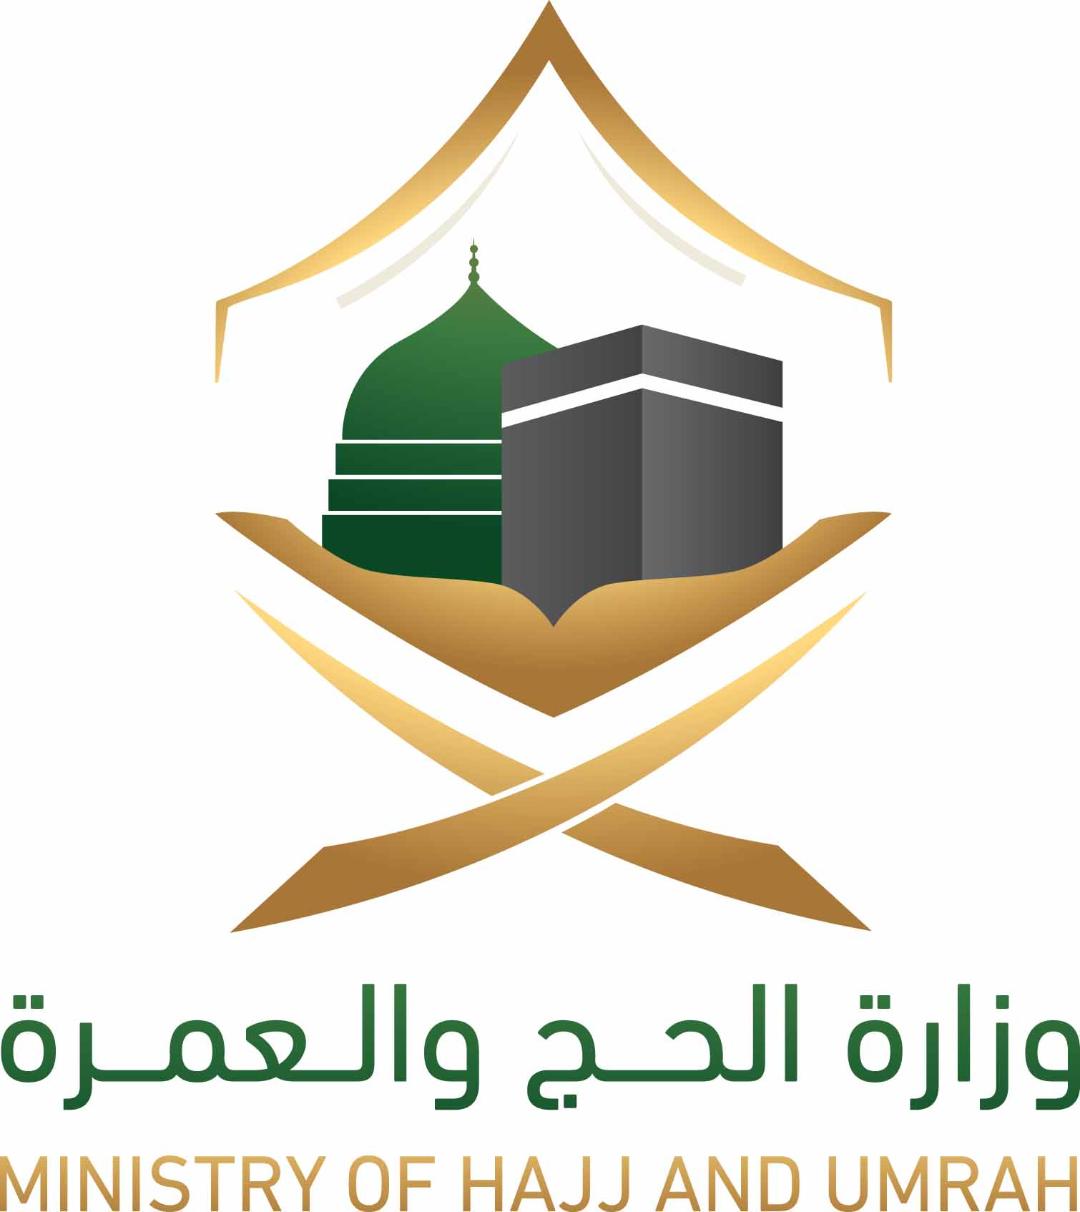   وزارة الحج السعودية: آلية إلكترونية لطلب استرجاع رسوم التأشيرات وأجور الخدمات 